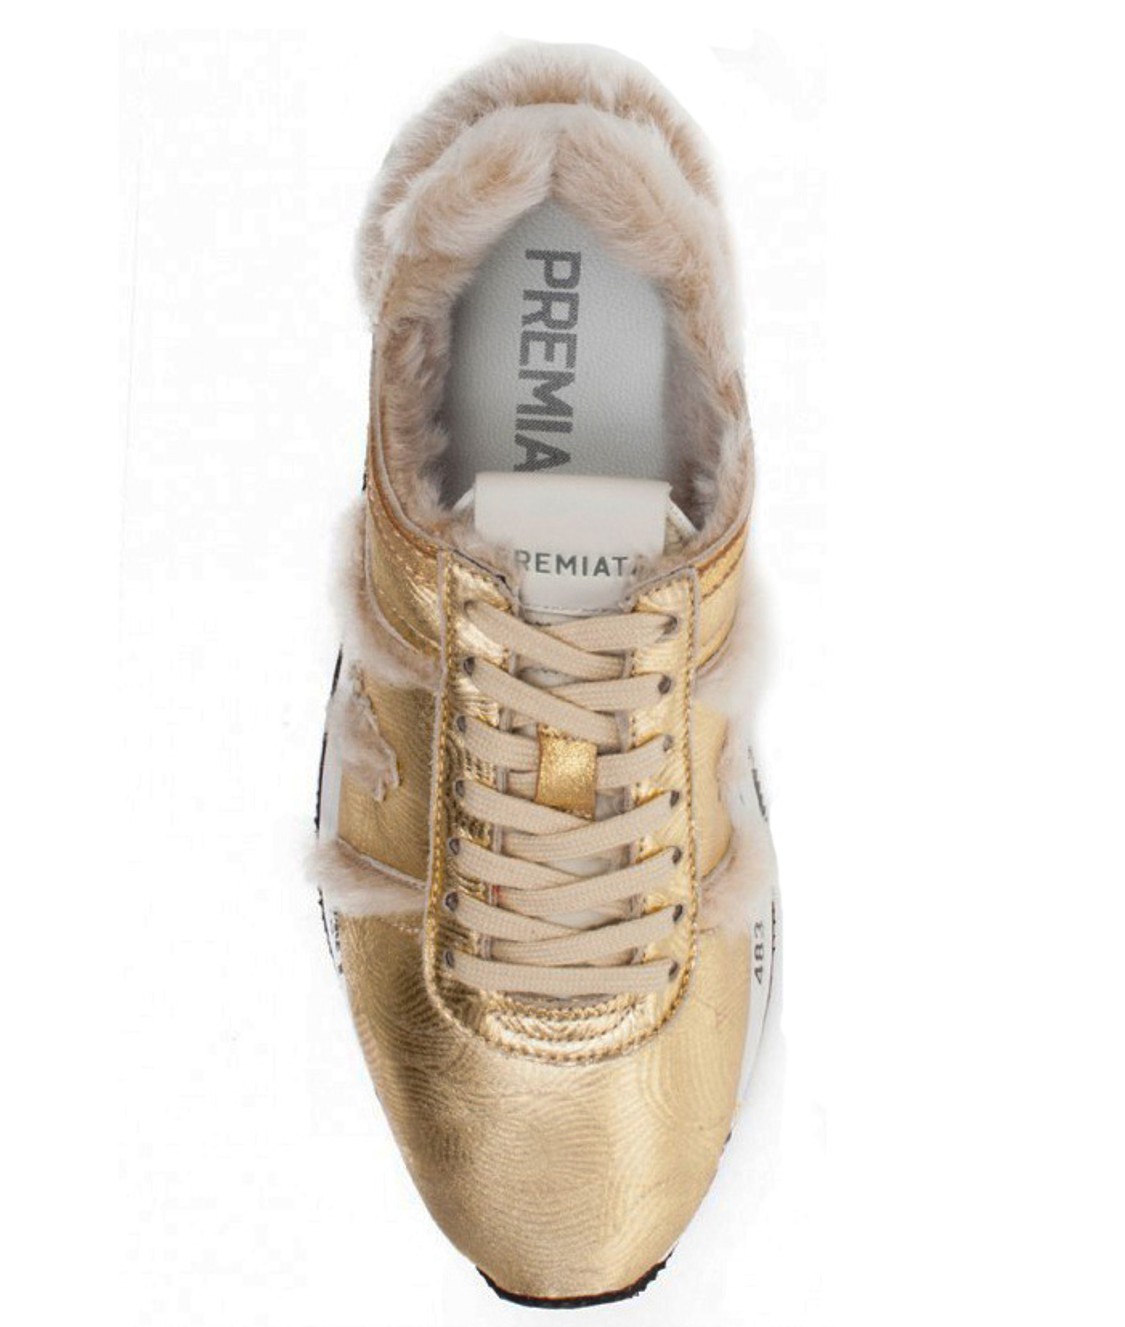 shop Premiata White Saldi Scarpe: Sneakers Premiata White, modello Conny, oro con dettagli in shearling rosa chiaro.

Composizione: 65% pelle, 35% shearling. number 1326